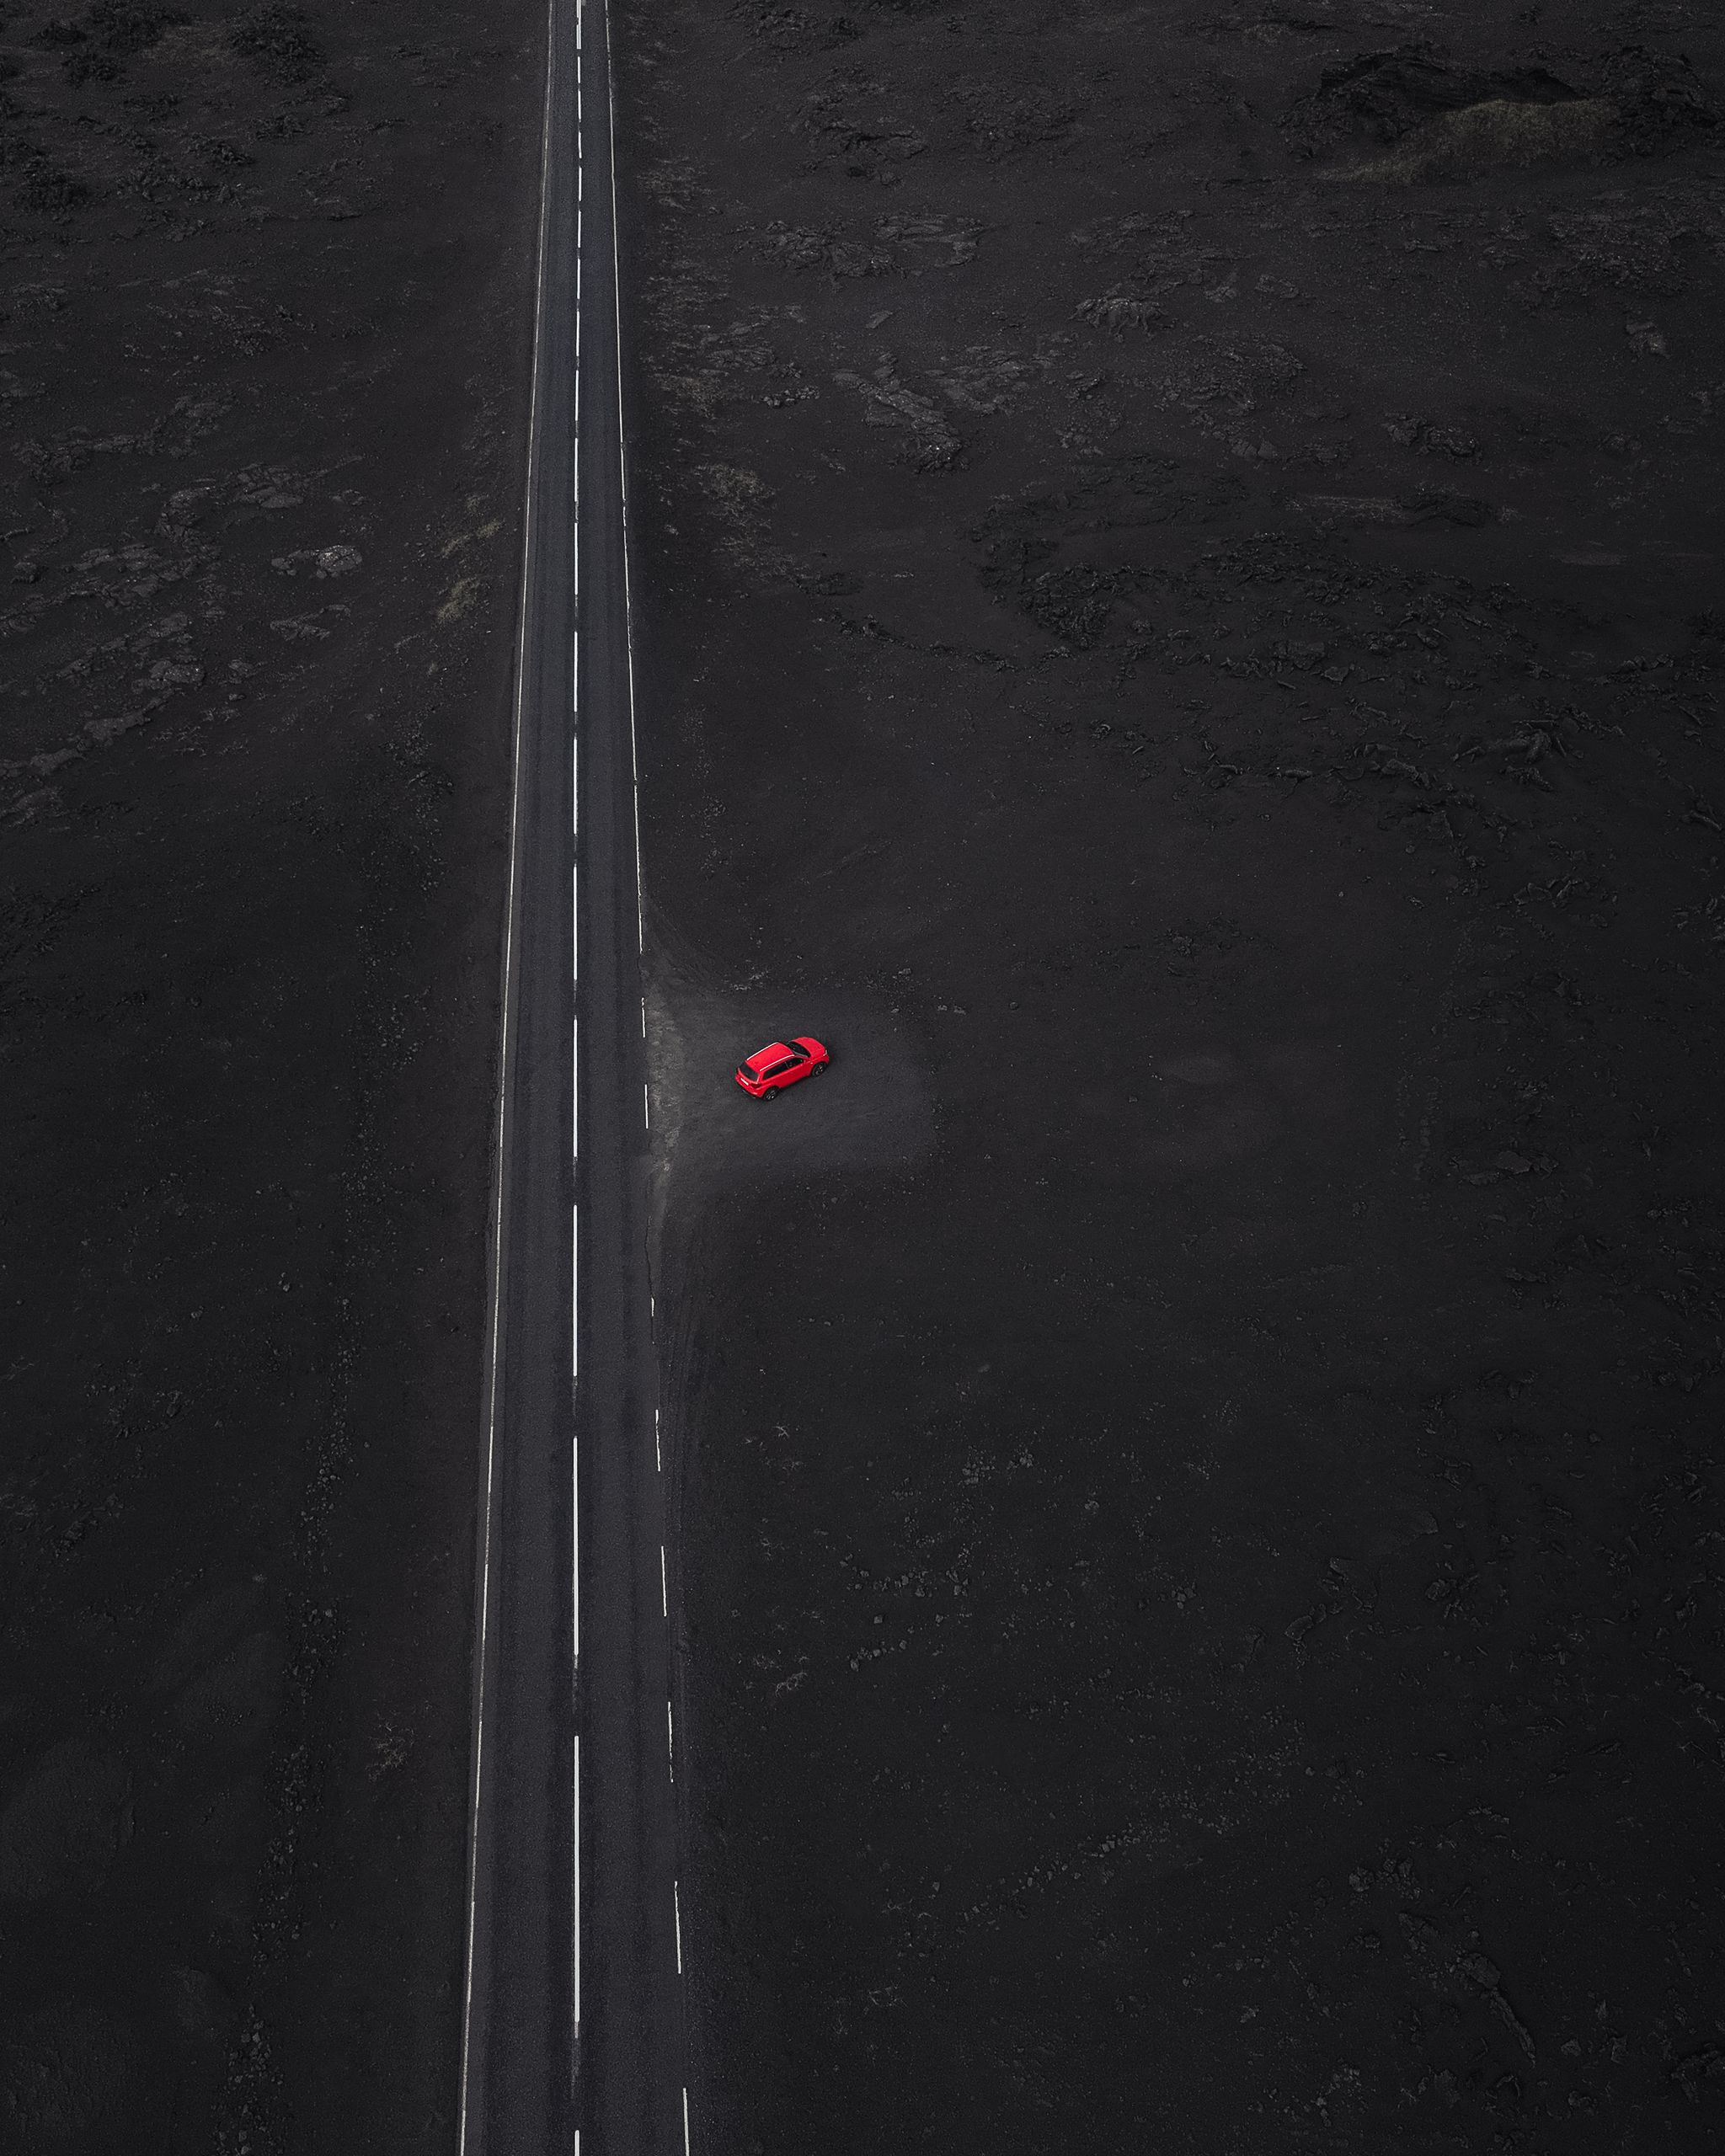 Ein roter Vitara-Mietwagen, geparkt an einer Straße mit Lavafelsen drum herum